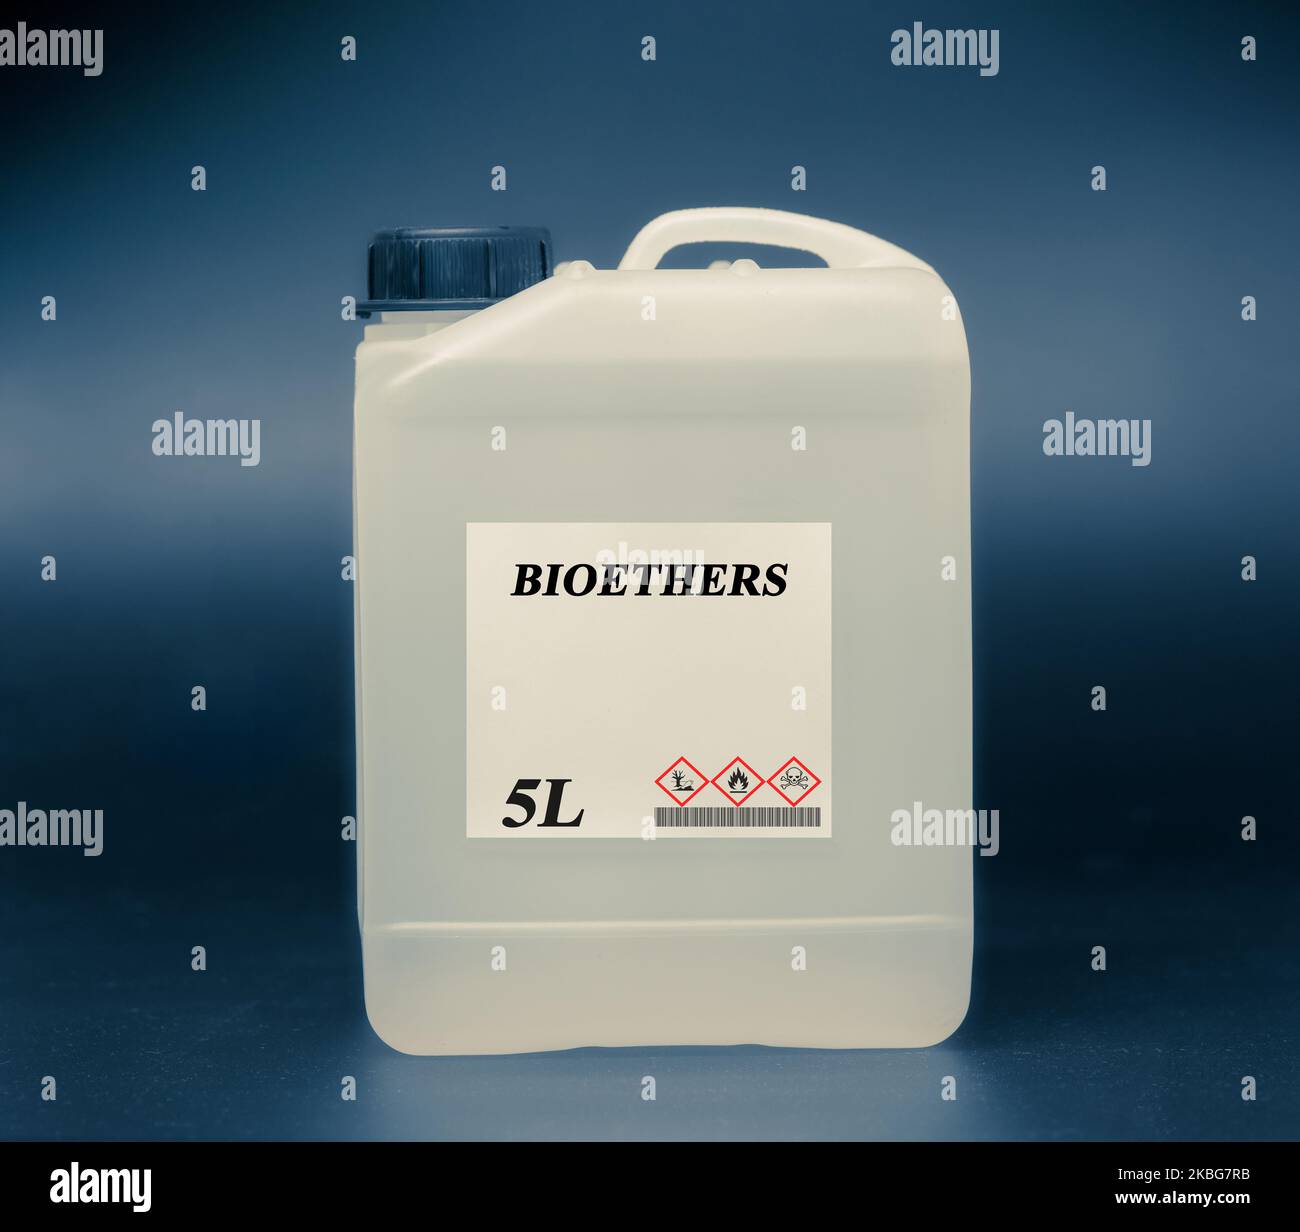 Biocarburant en laboratoire chimique en canister plastique Bioéthers Banque D'Images